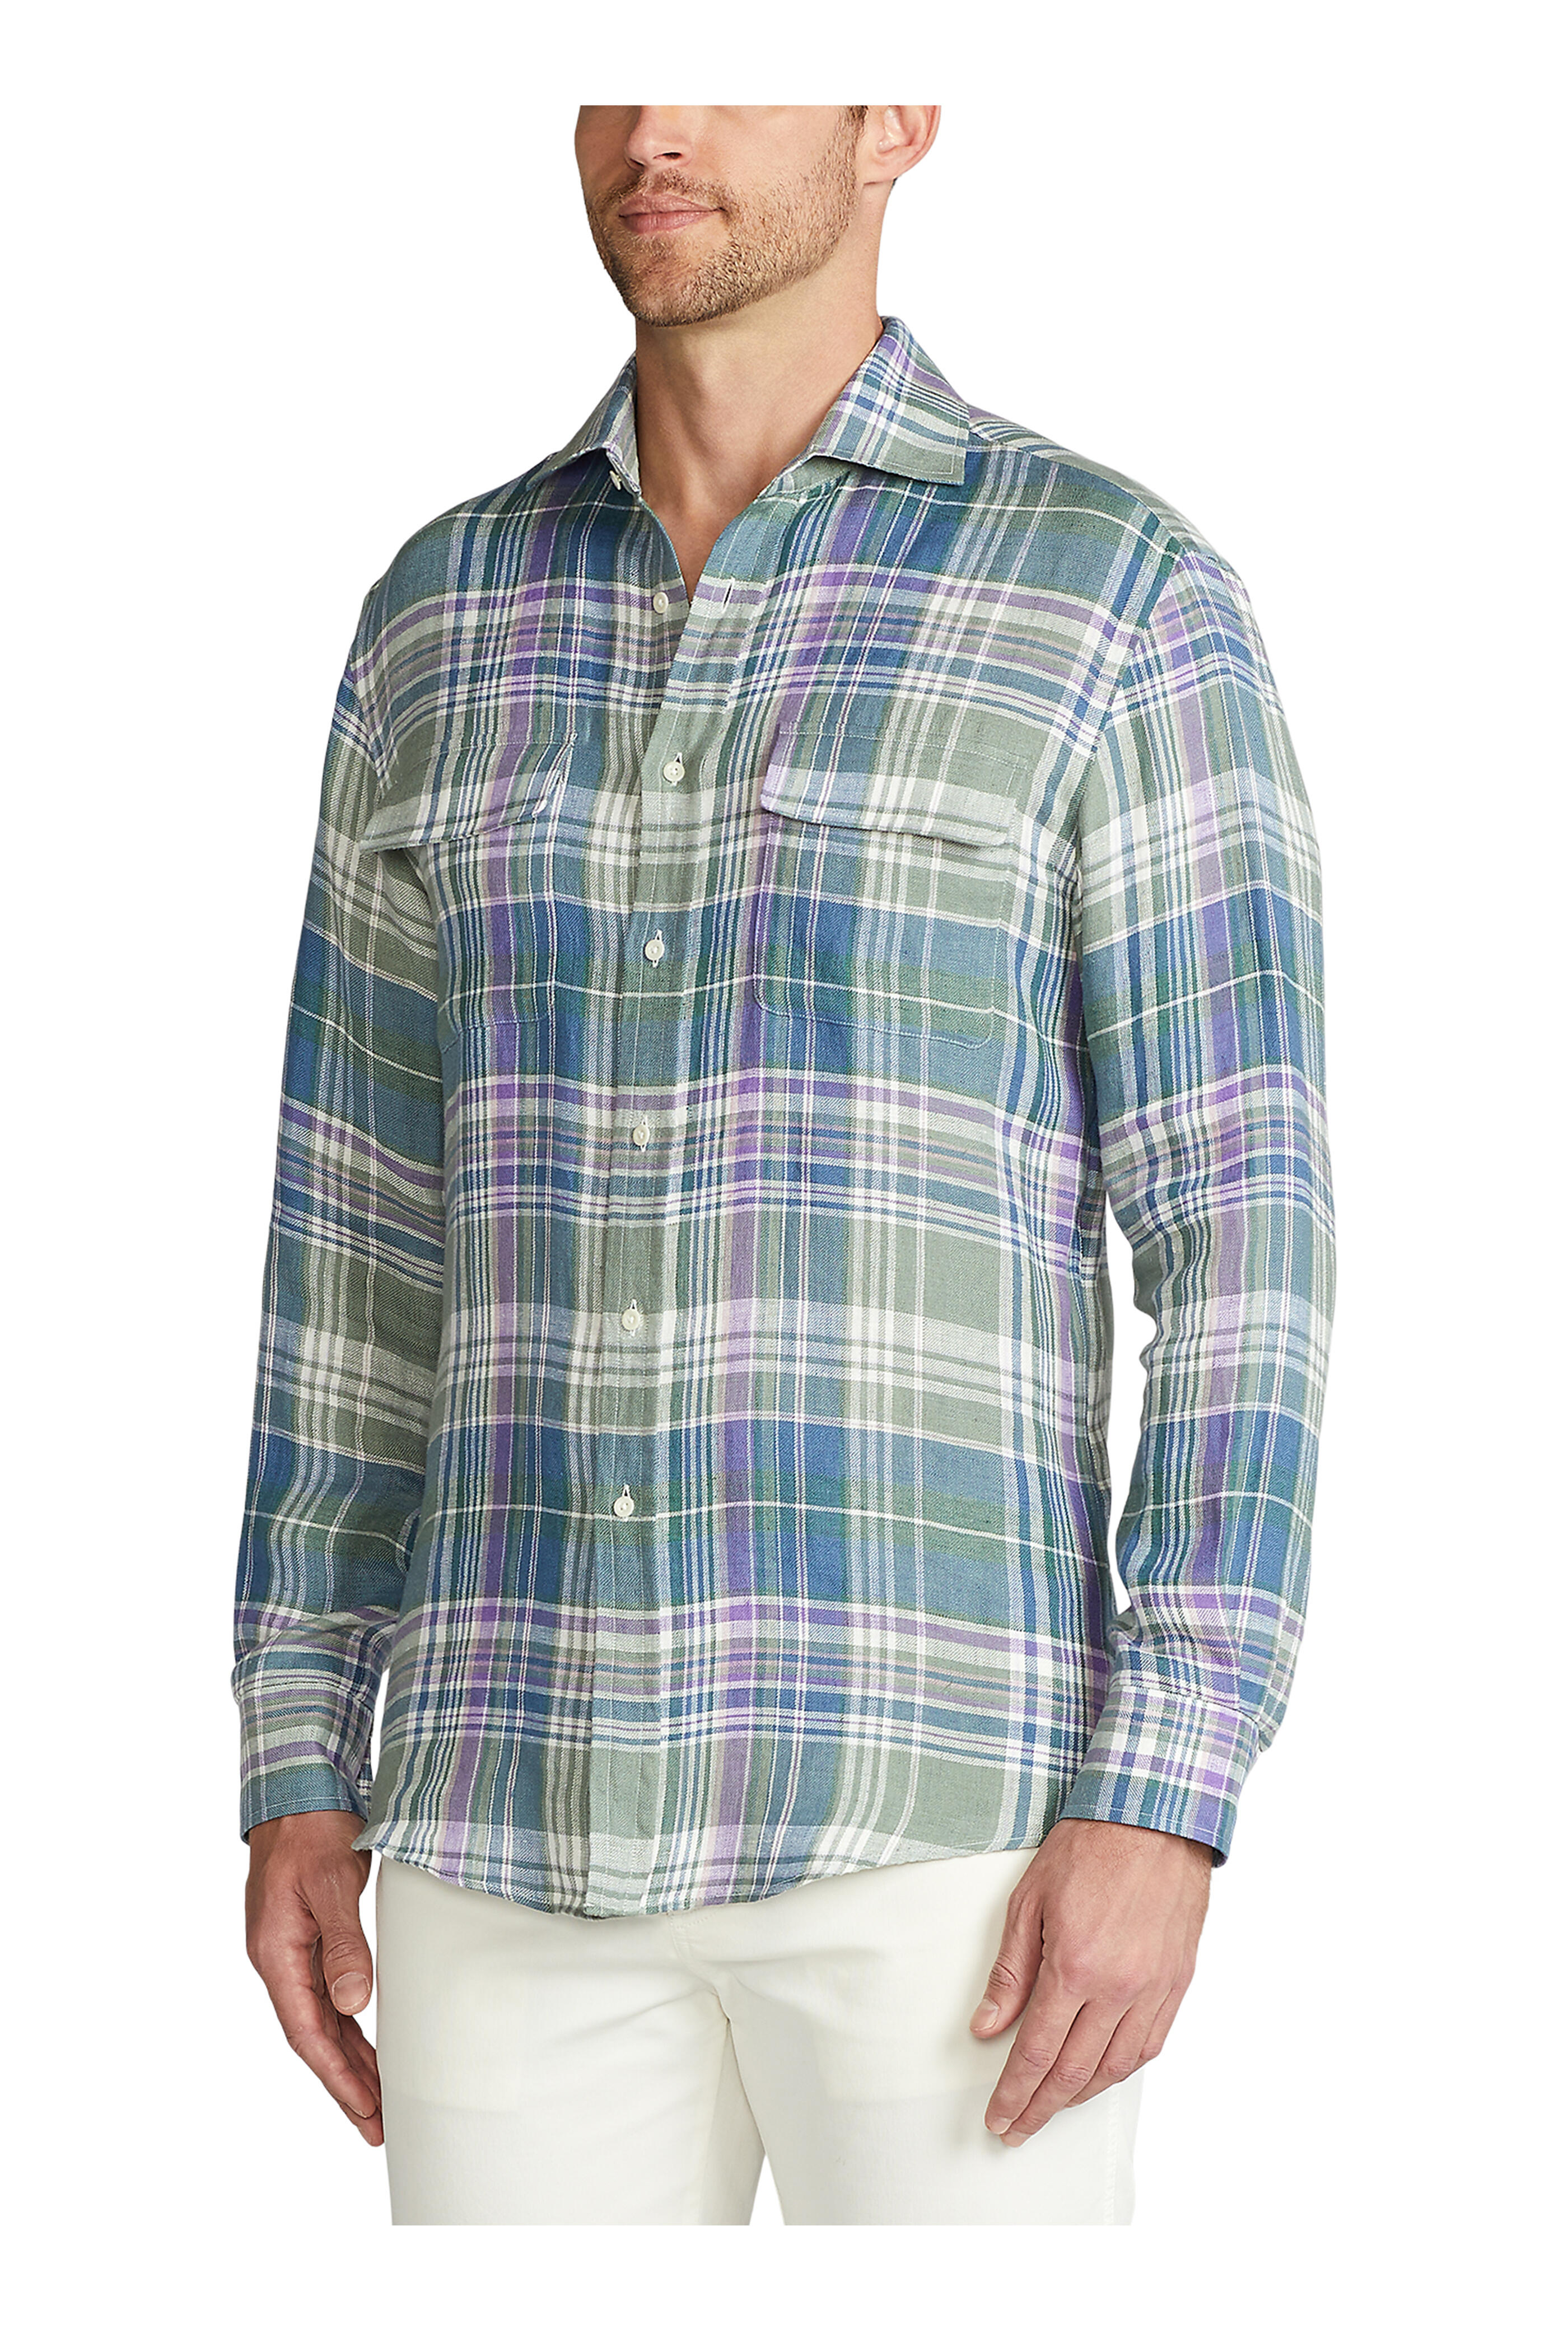 Ralph Lauren Purple Label - Multicolor Plaid Linen Button Up Shirt